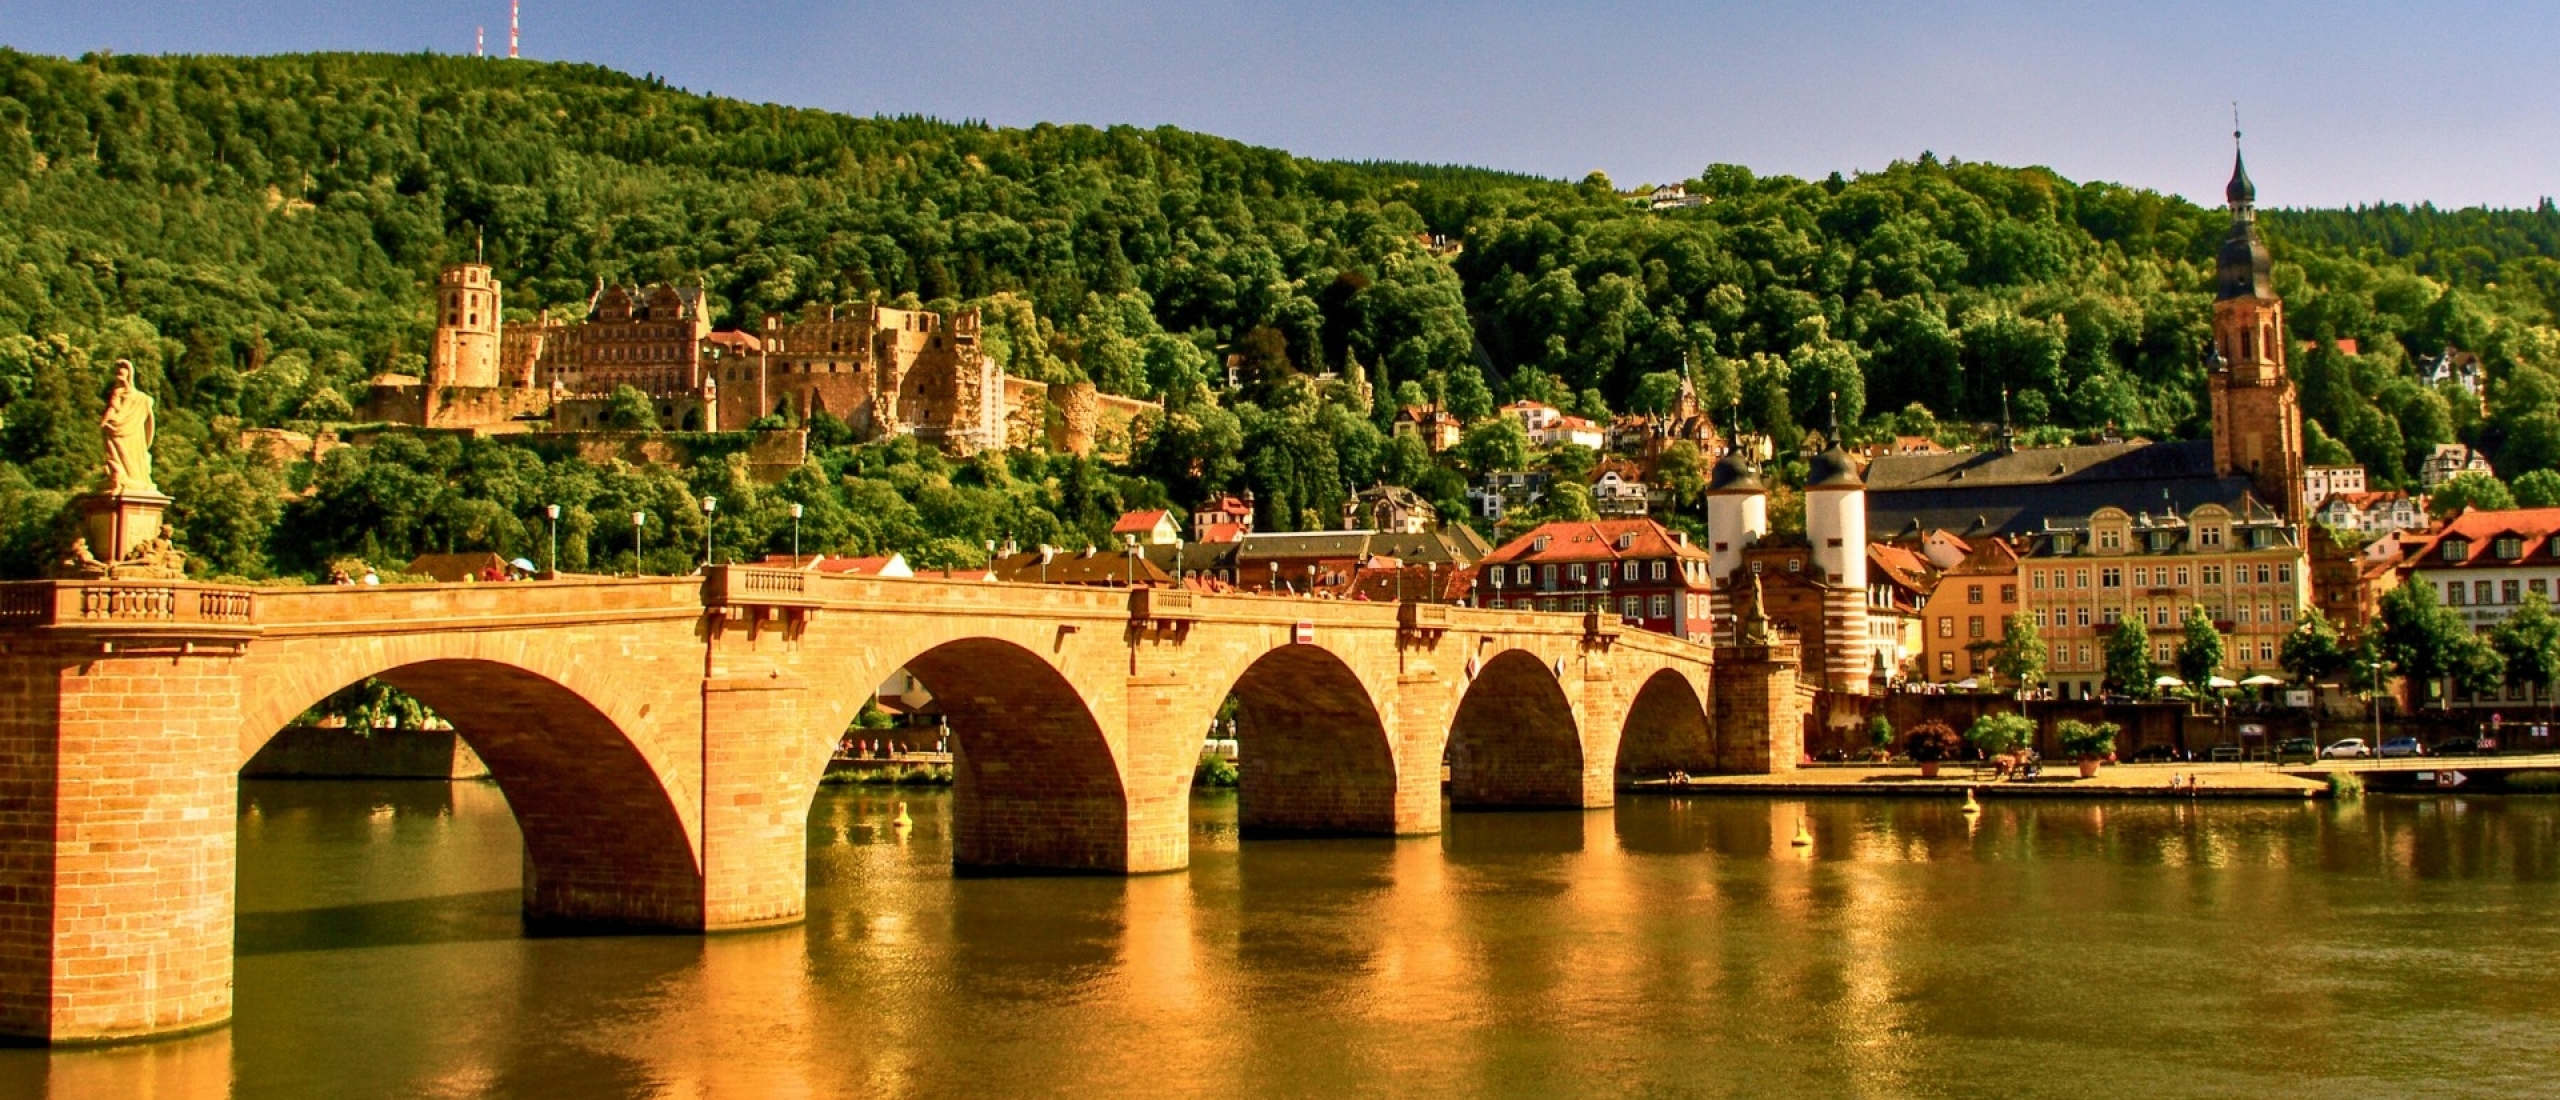 Paleis Heidelberg